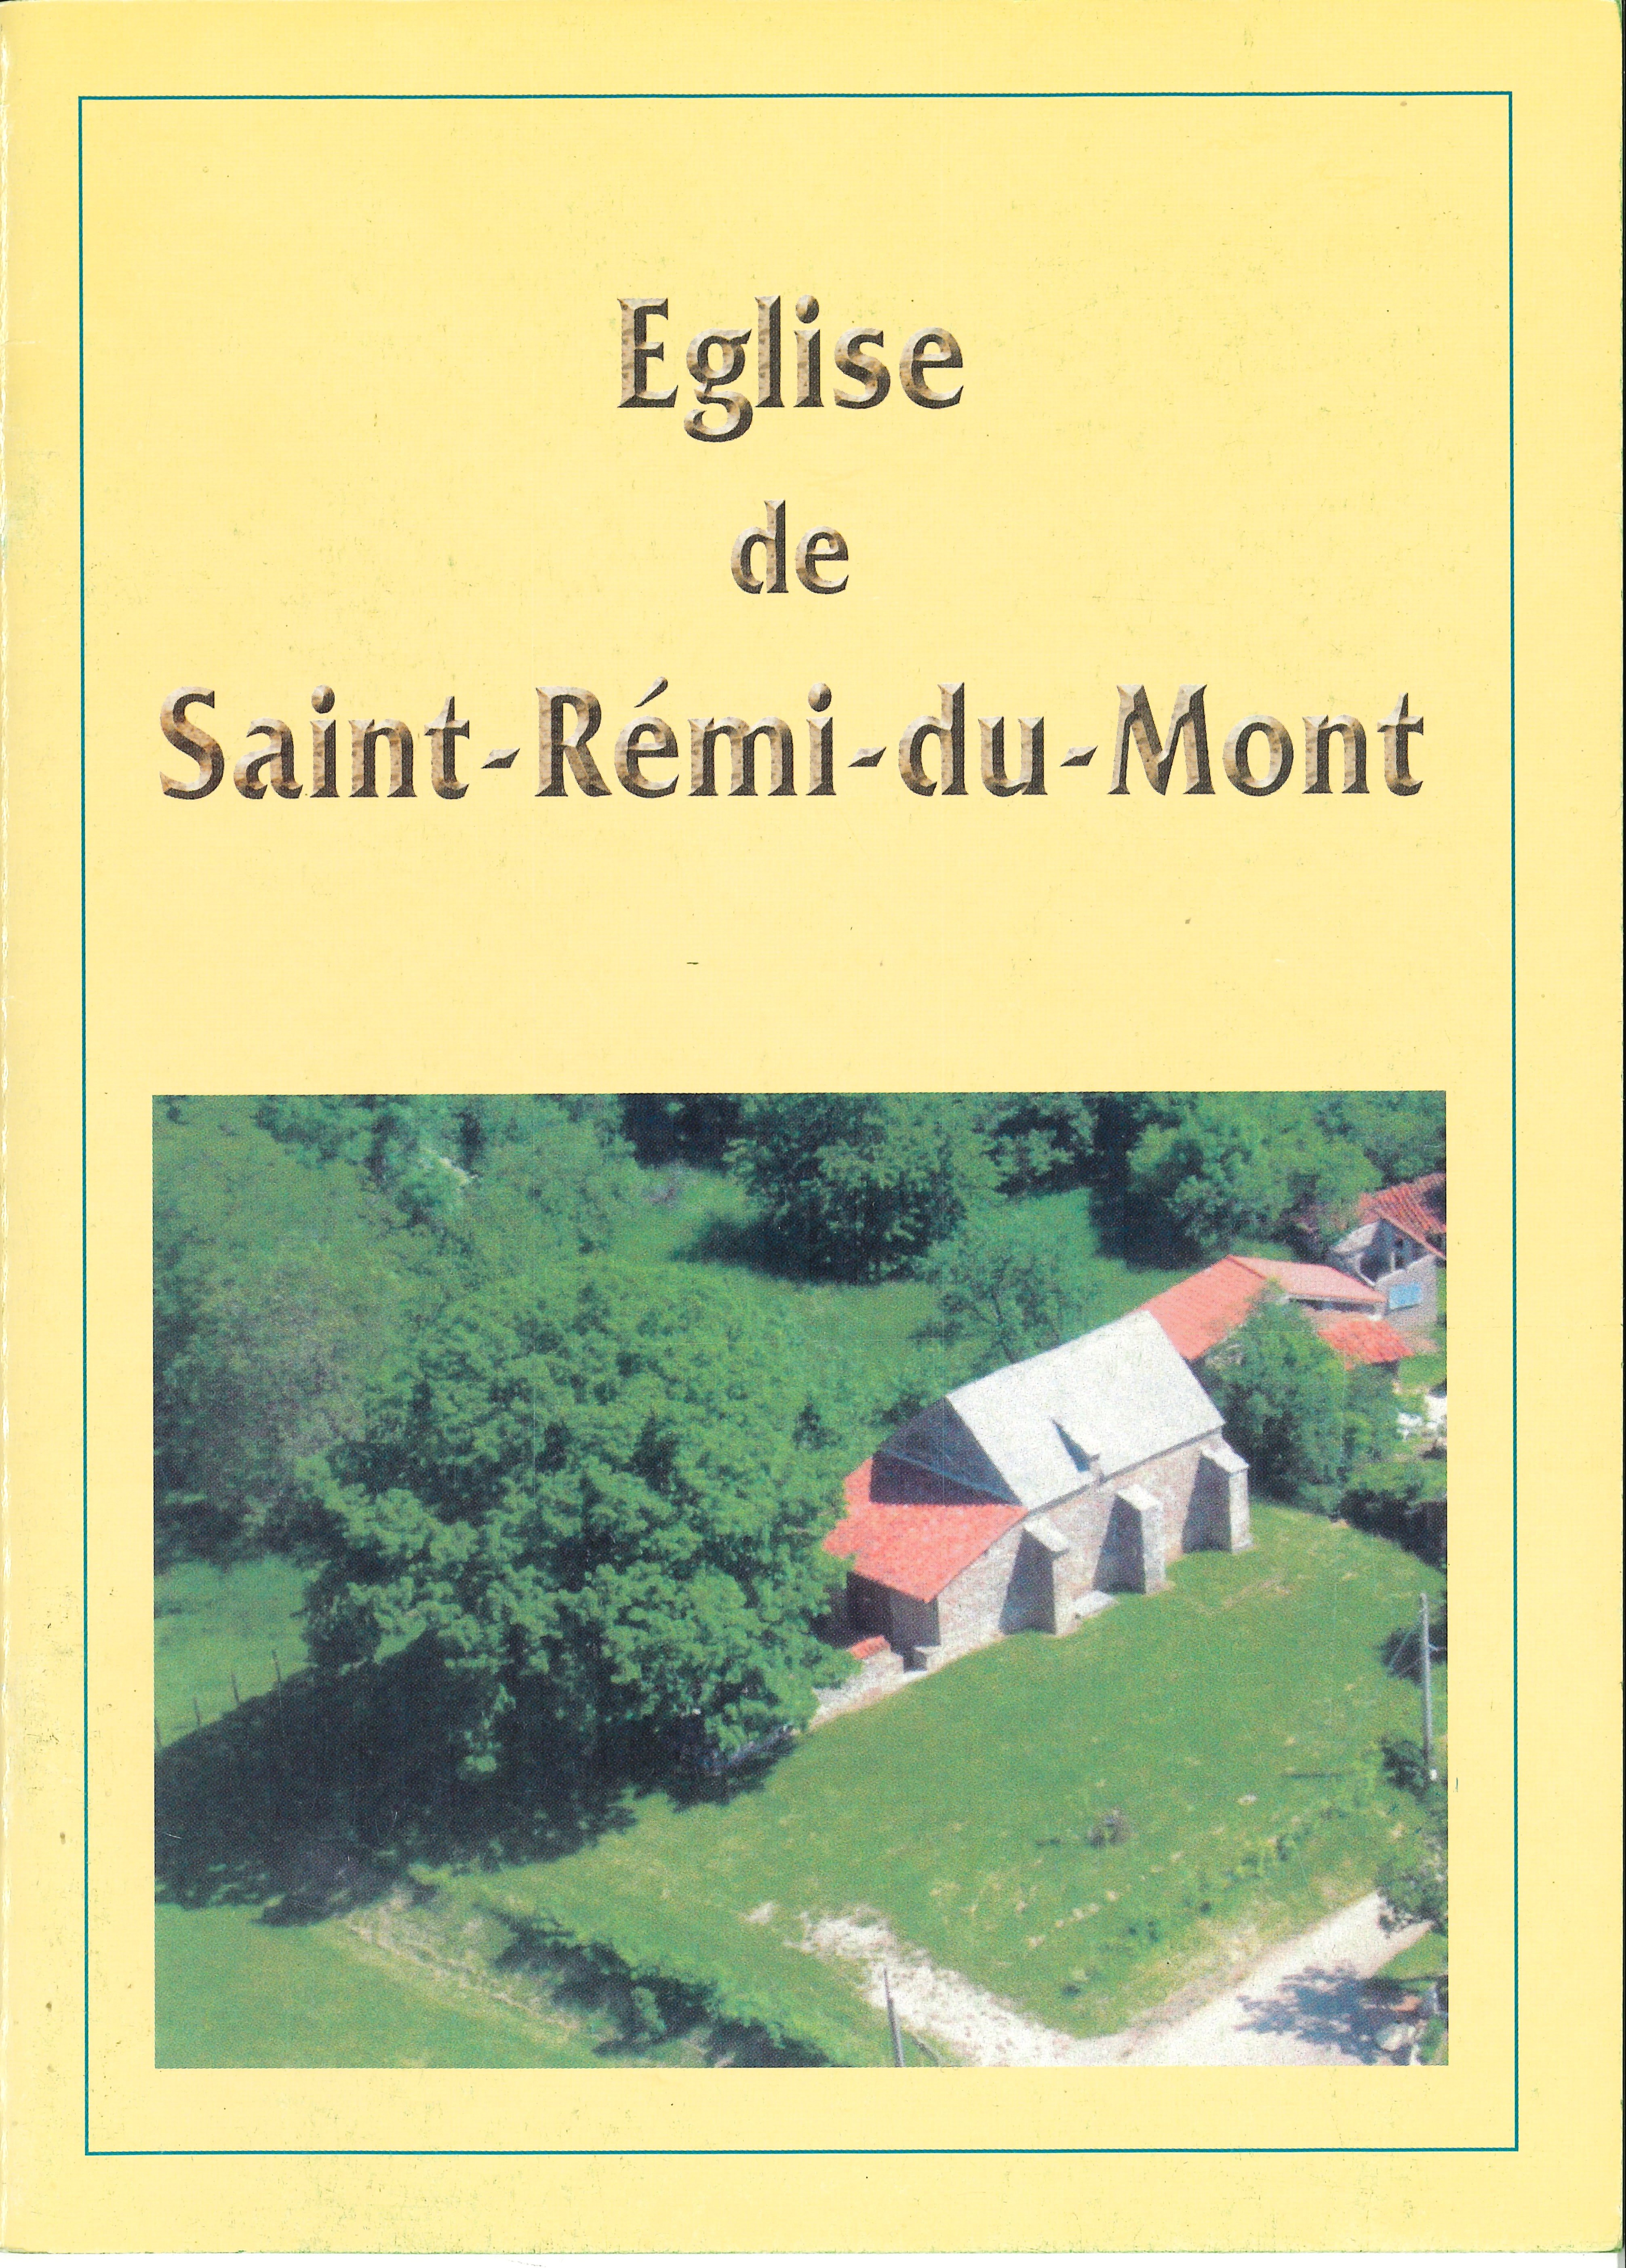 Eglise_de_saint-rémi-du-mont_nouvelle.jpg